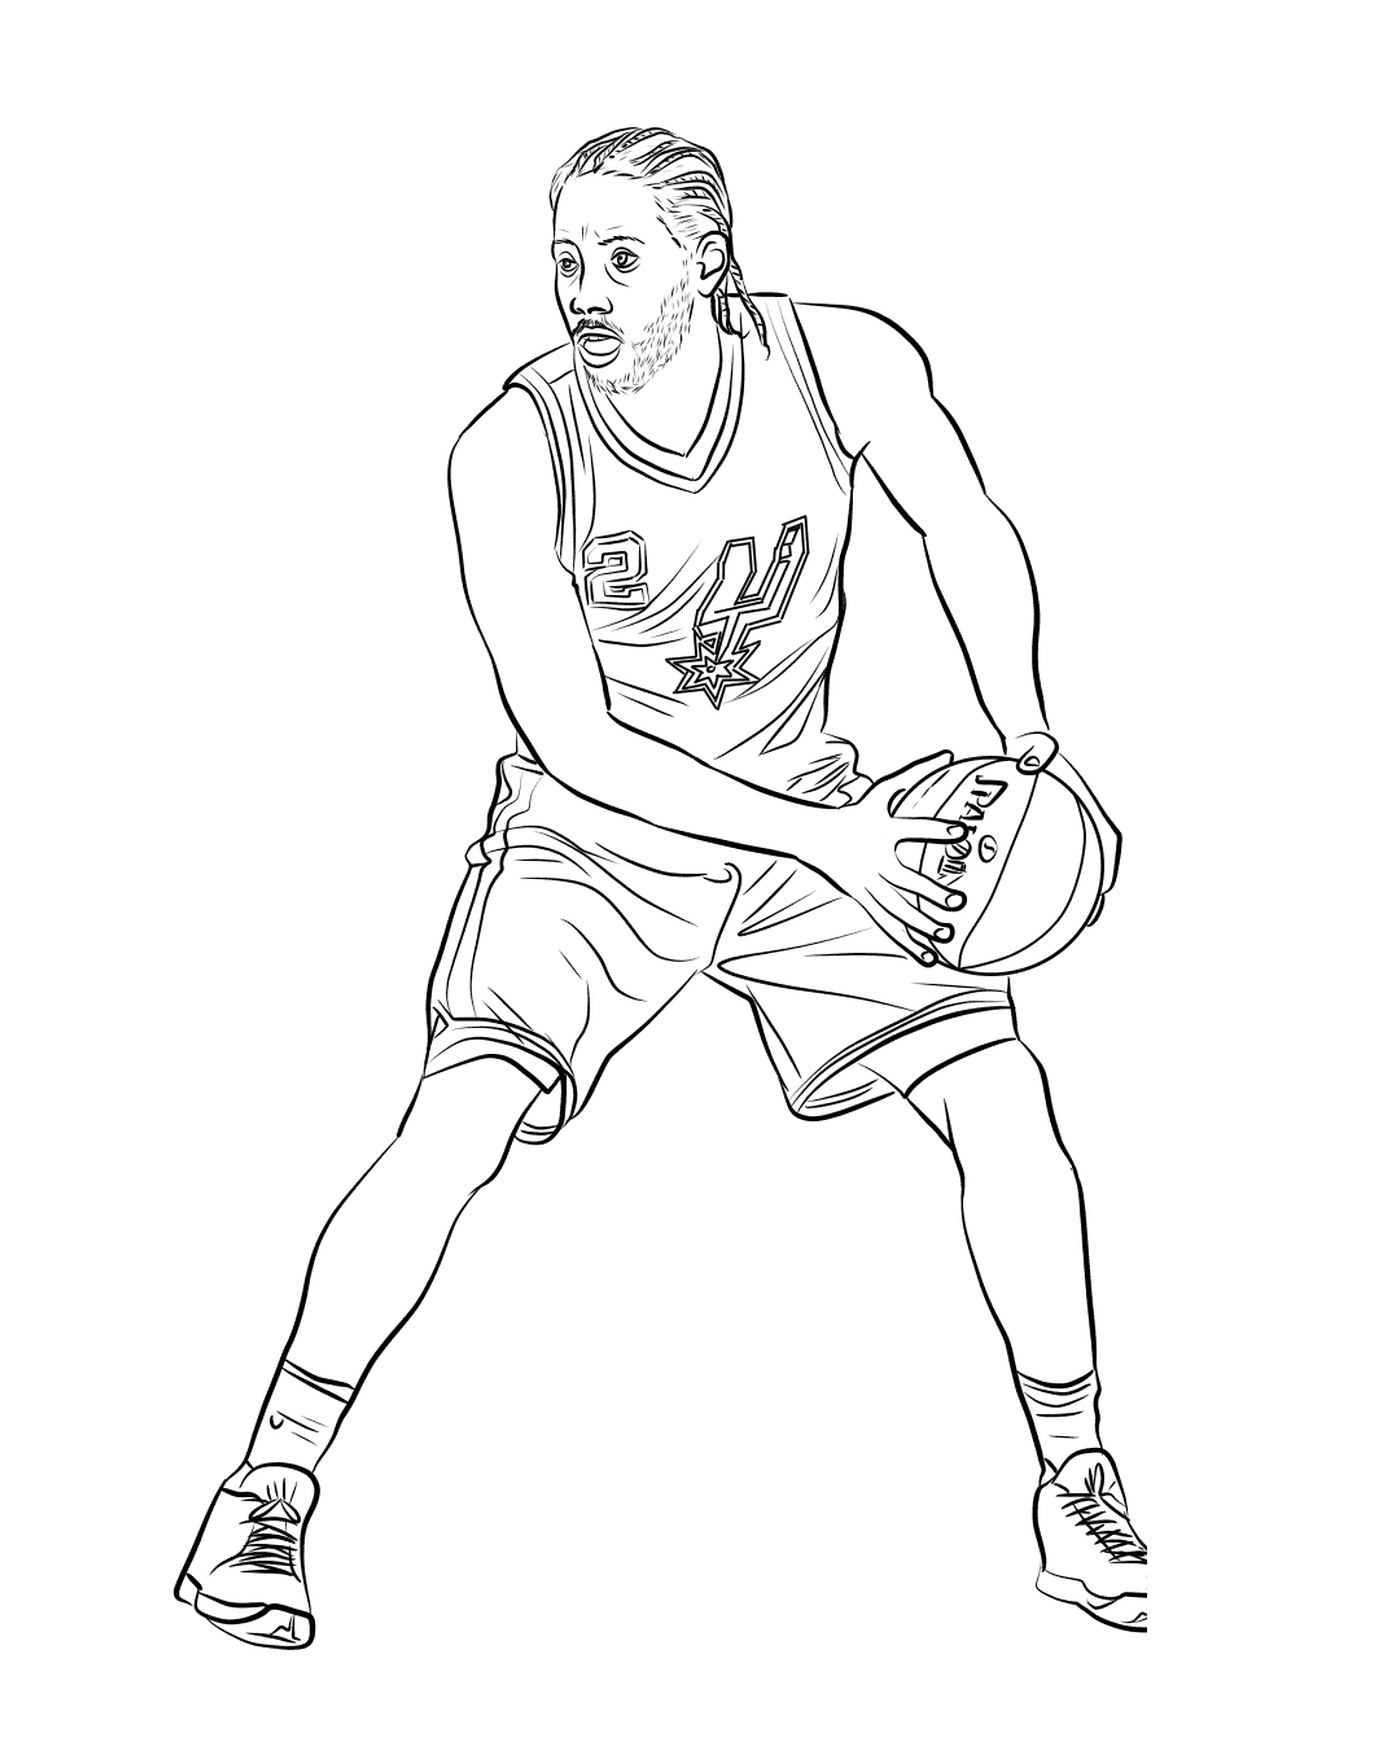  Kawhi Leonard, jogador de basquete 